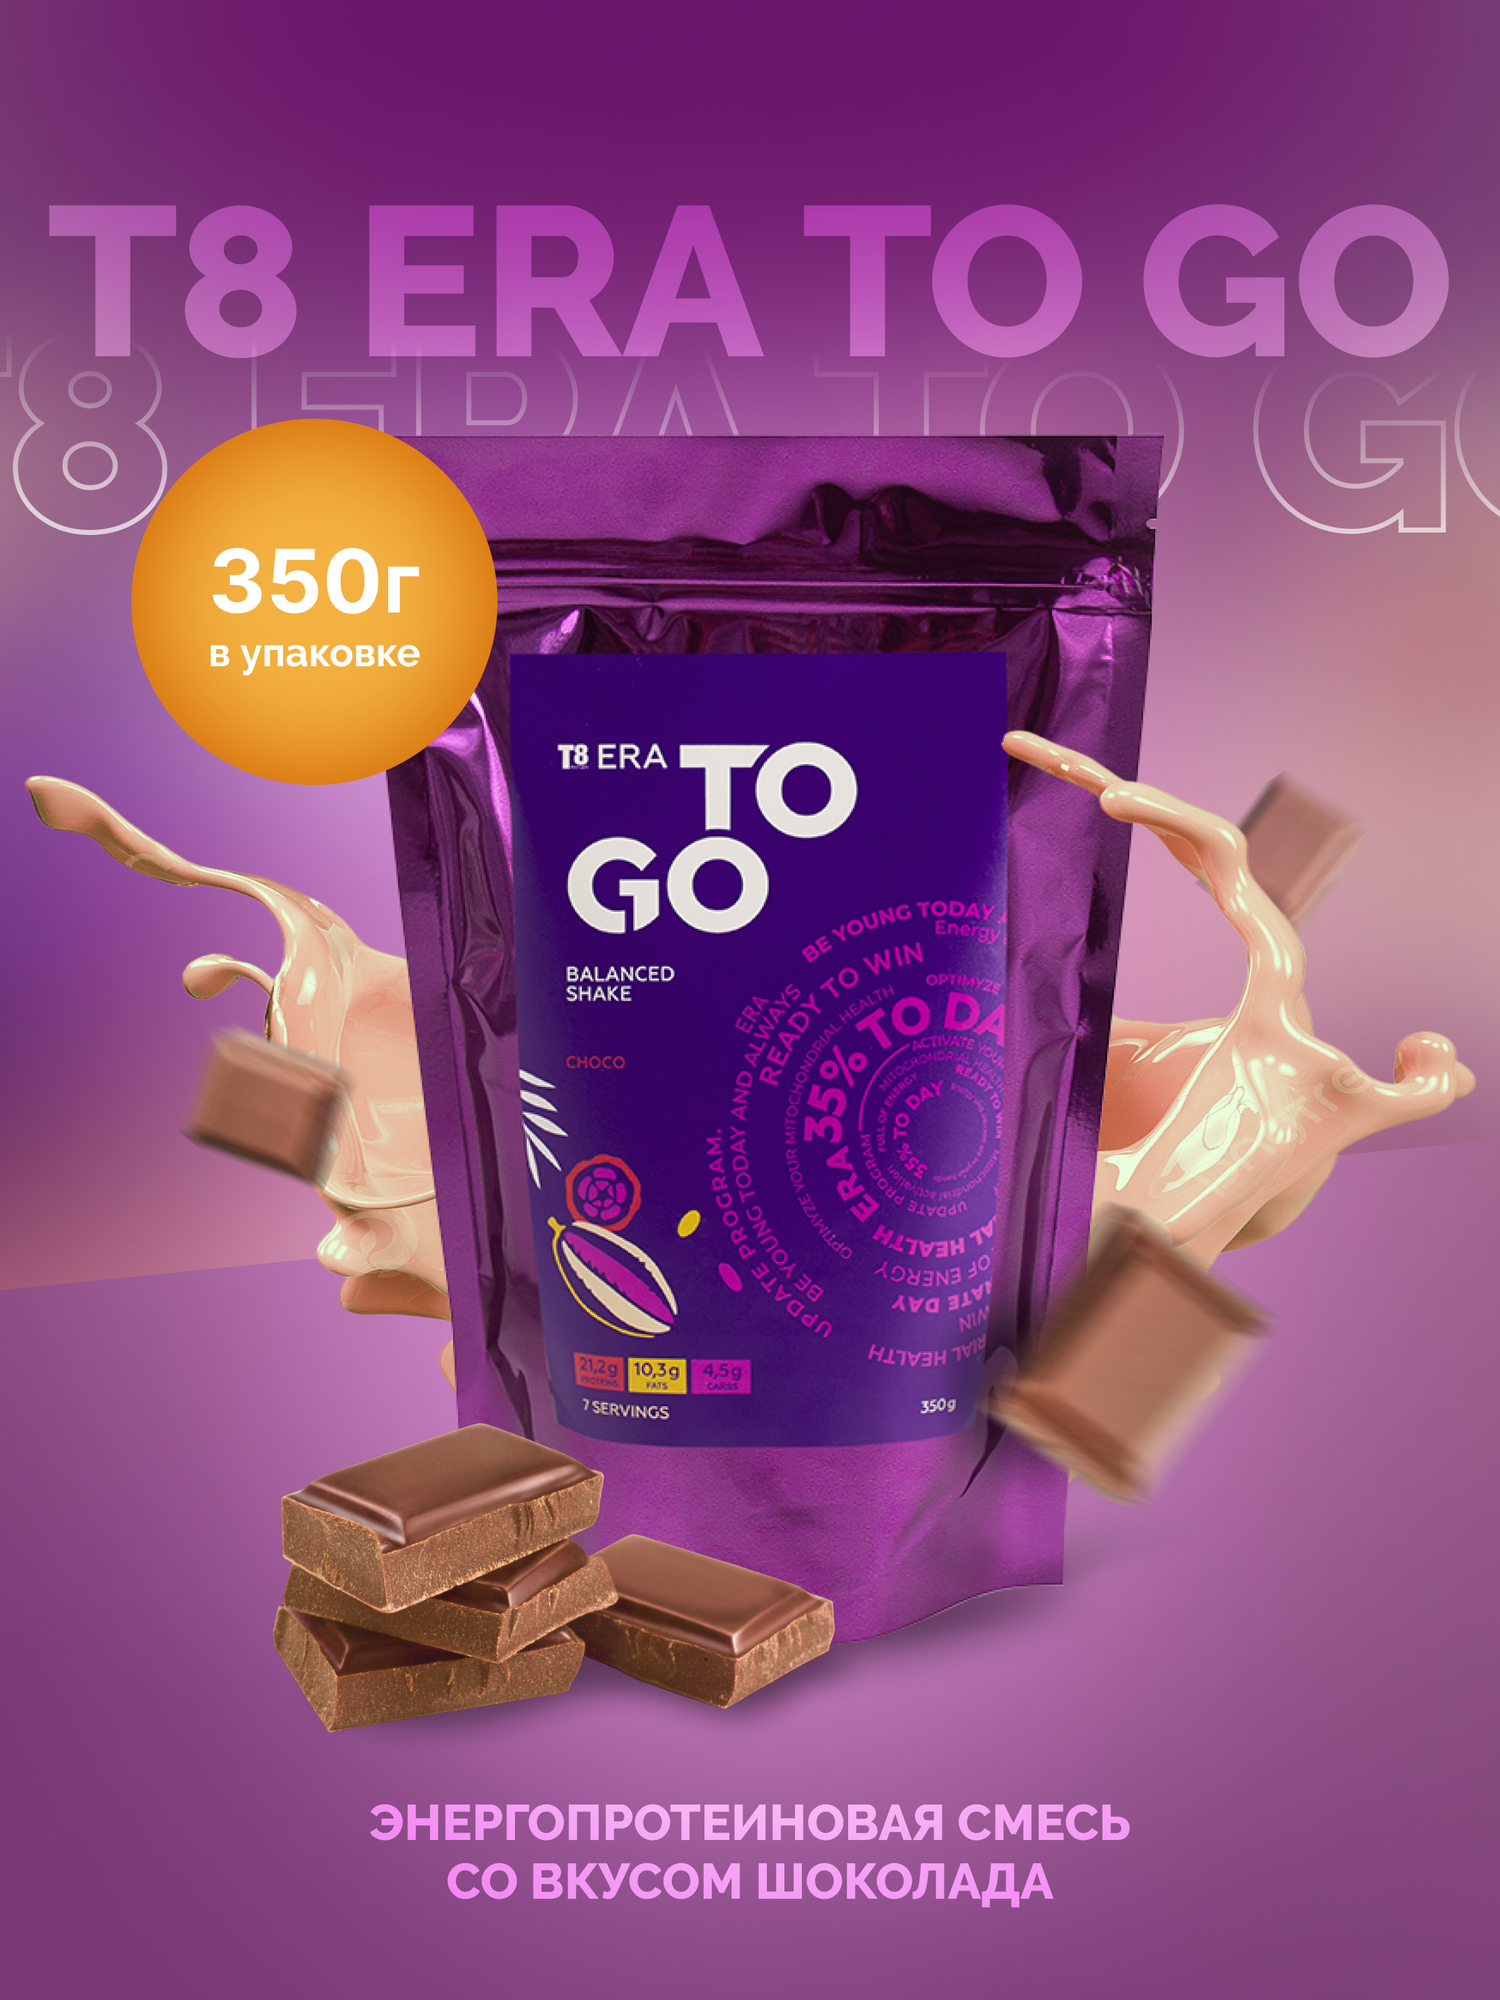 Протеиновый коктейльT8 TO GO Chocolate (Tayga8 / Vilavi) на основе горохового протеина, МСТ-масла и кокосового молока, кето, 350г